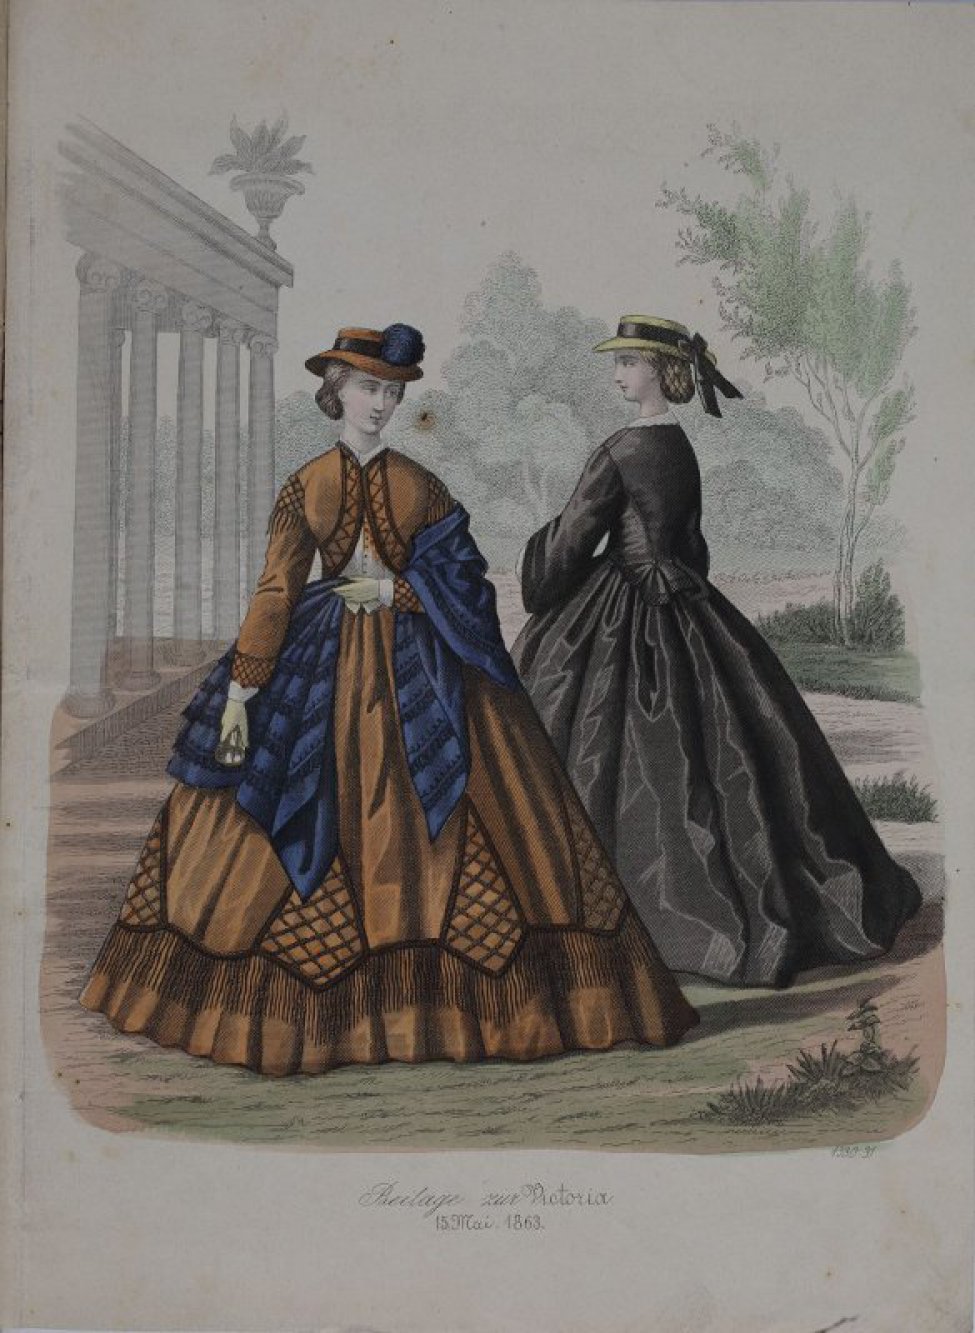 Изображены две дамы в платьях с кринолинами. Одна в коричневом и с синей шалью, другая - в черном с соломенной "canotier".